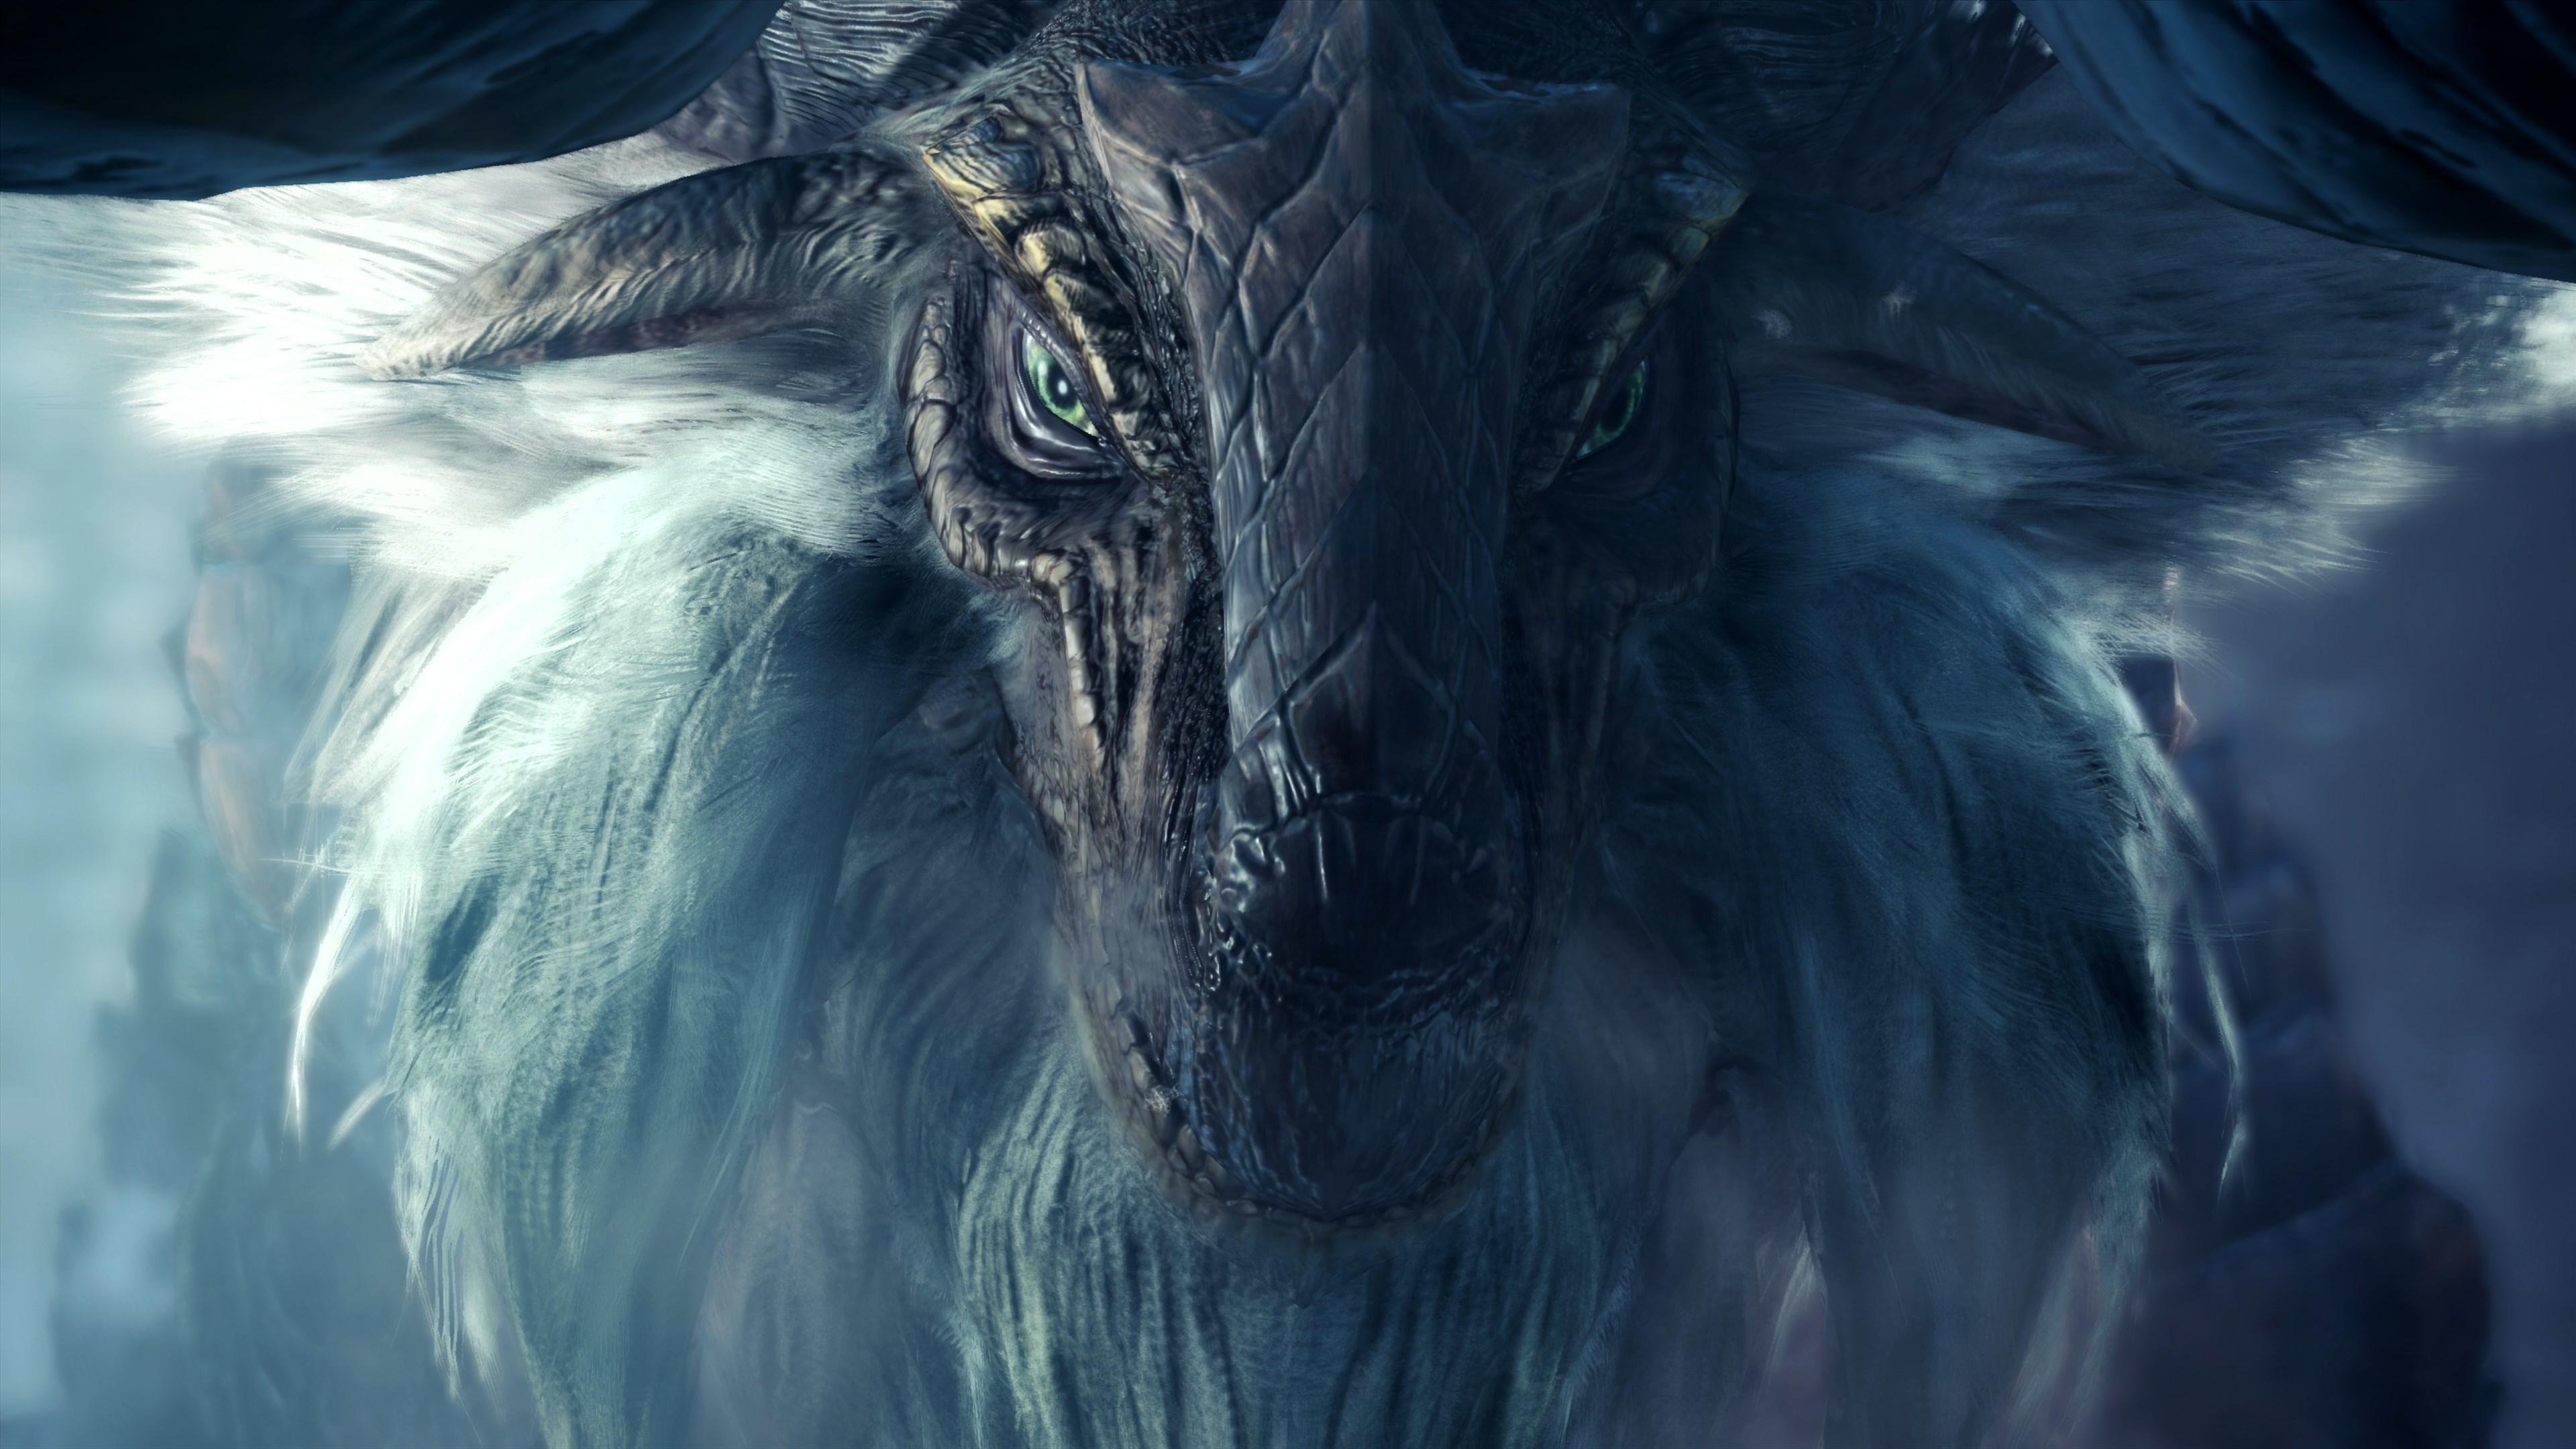 monstre fond d'écran en direct,dragon,personnage fictif,créature mythique,oeuvre de cg,mythologie